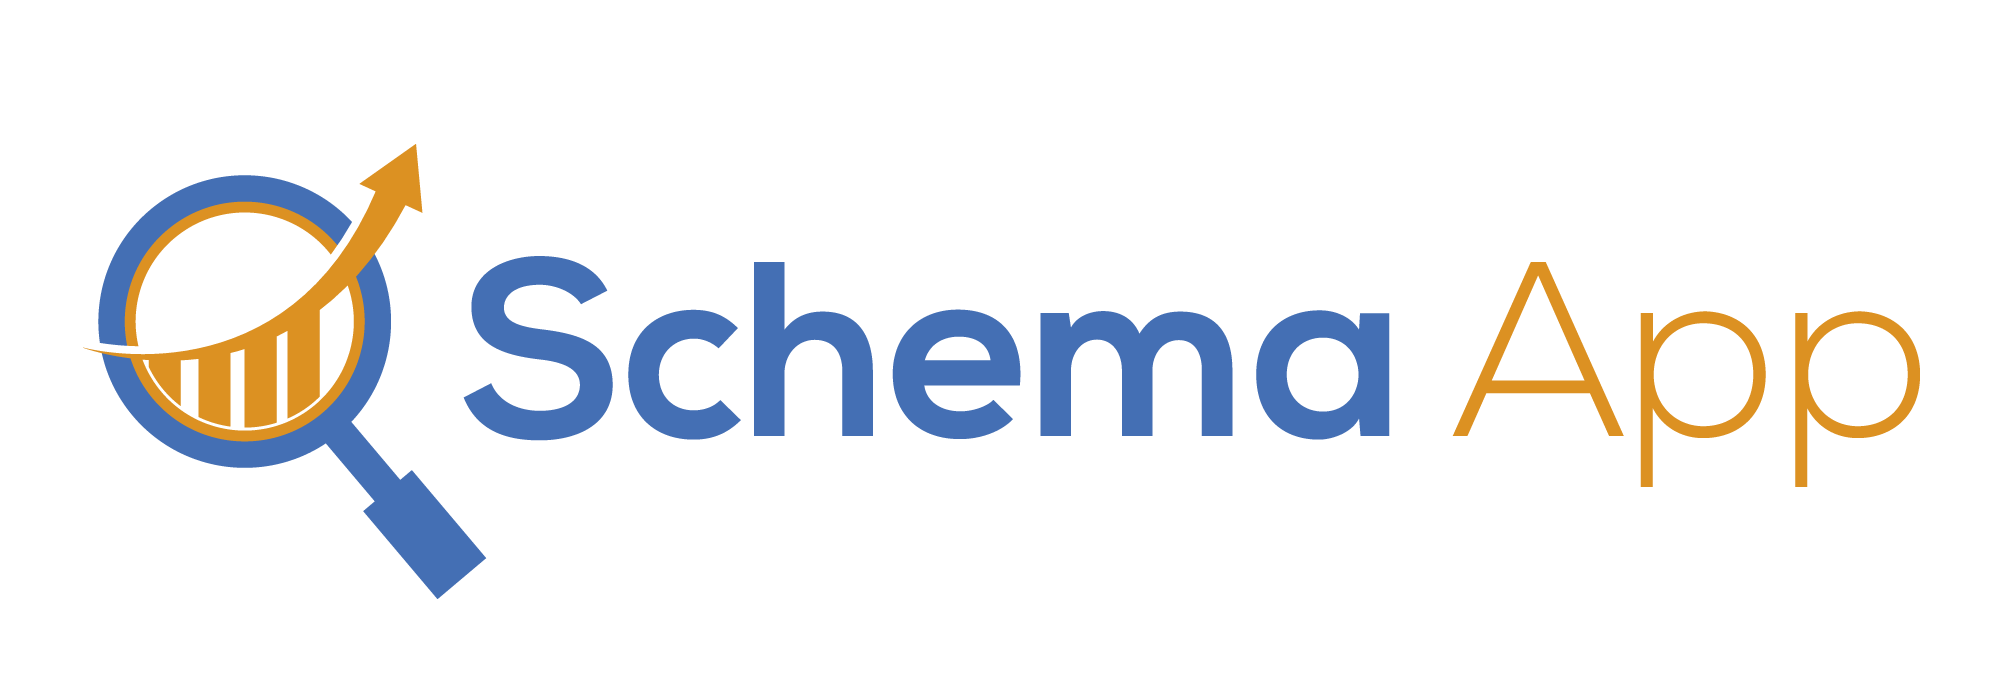 Schema App Logo